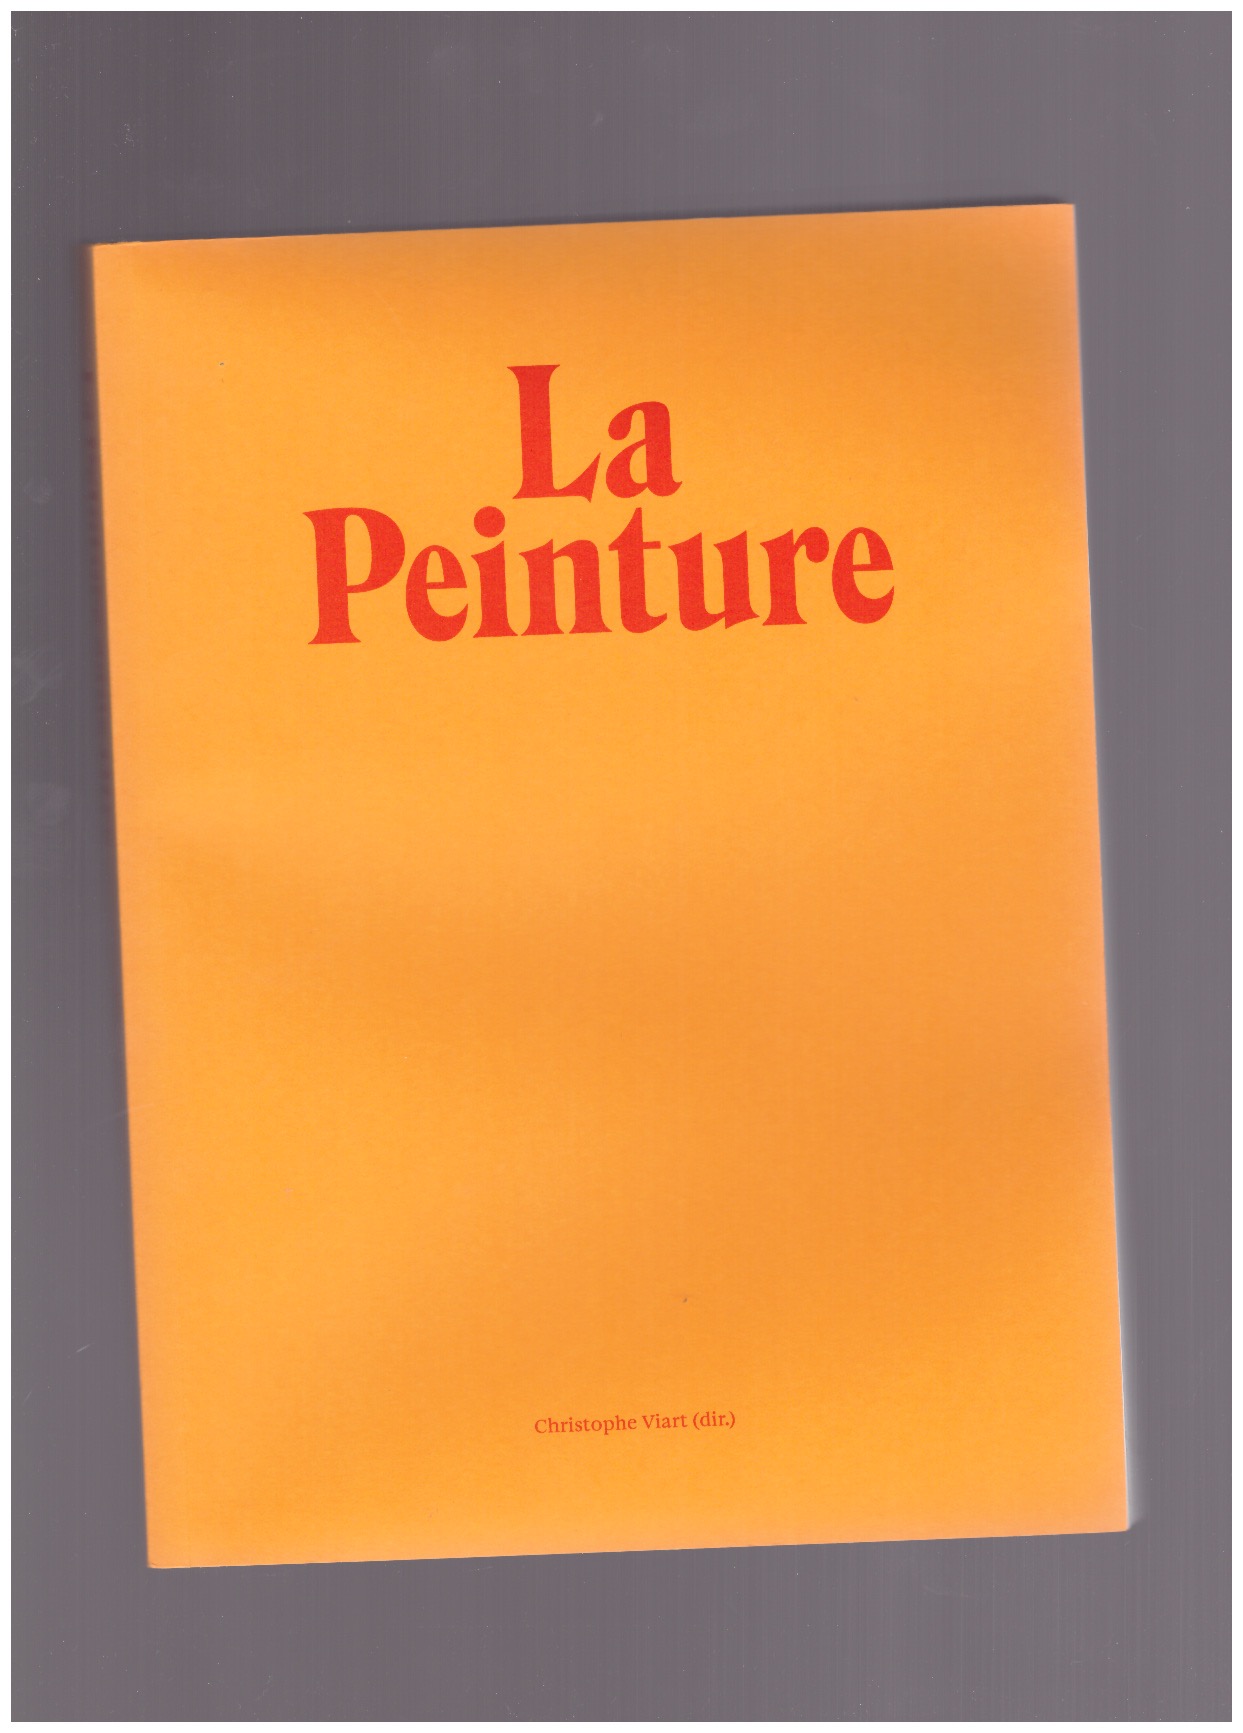 VIART, Christophe (ed.) - La Peinture sans titre